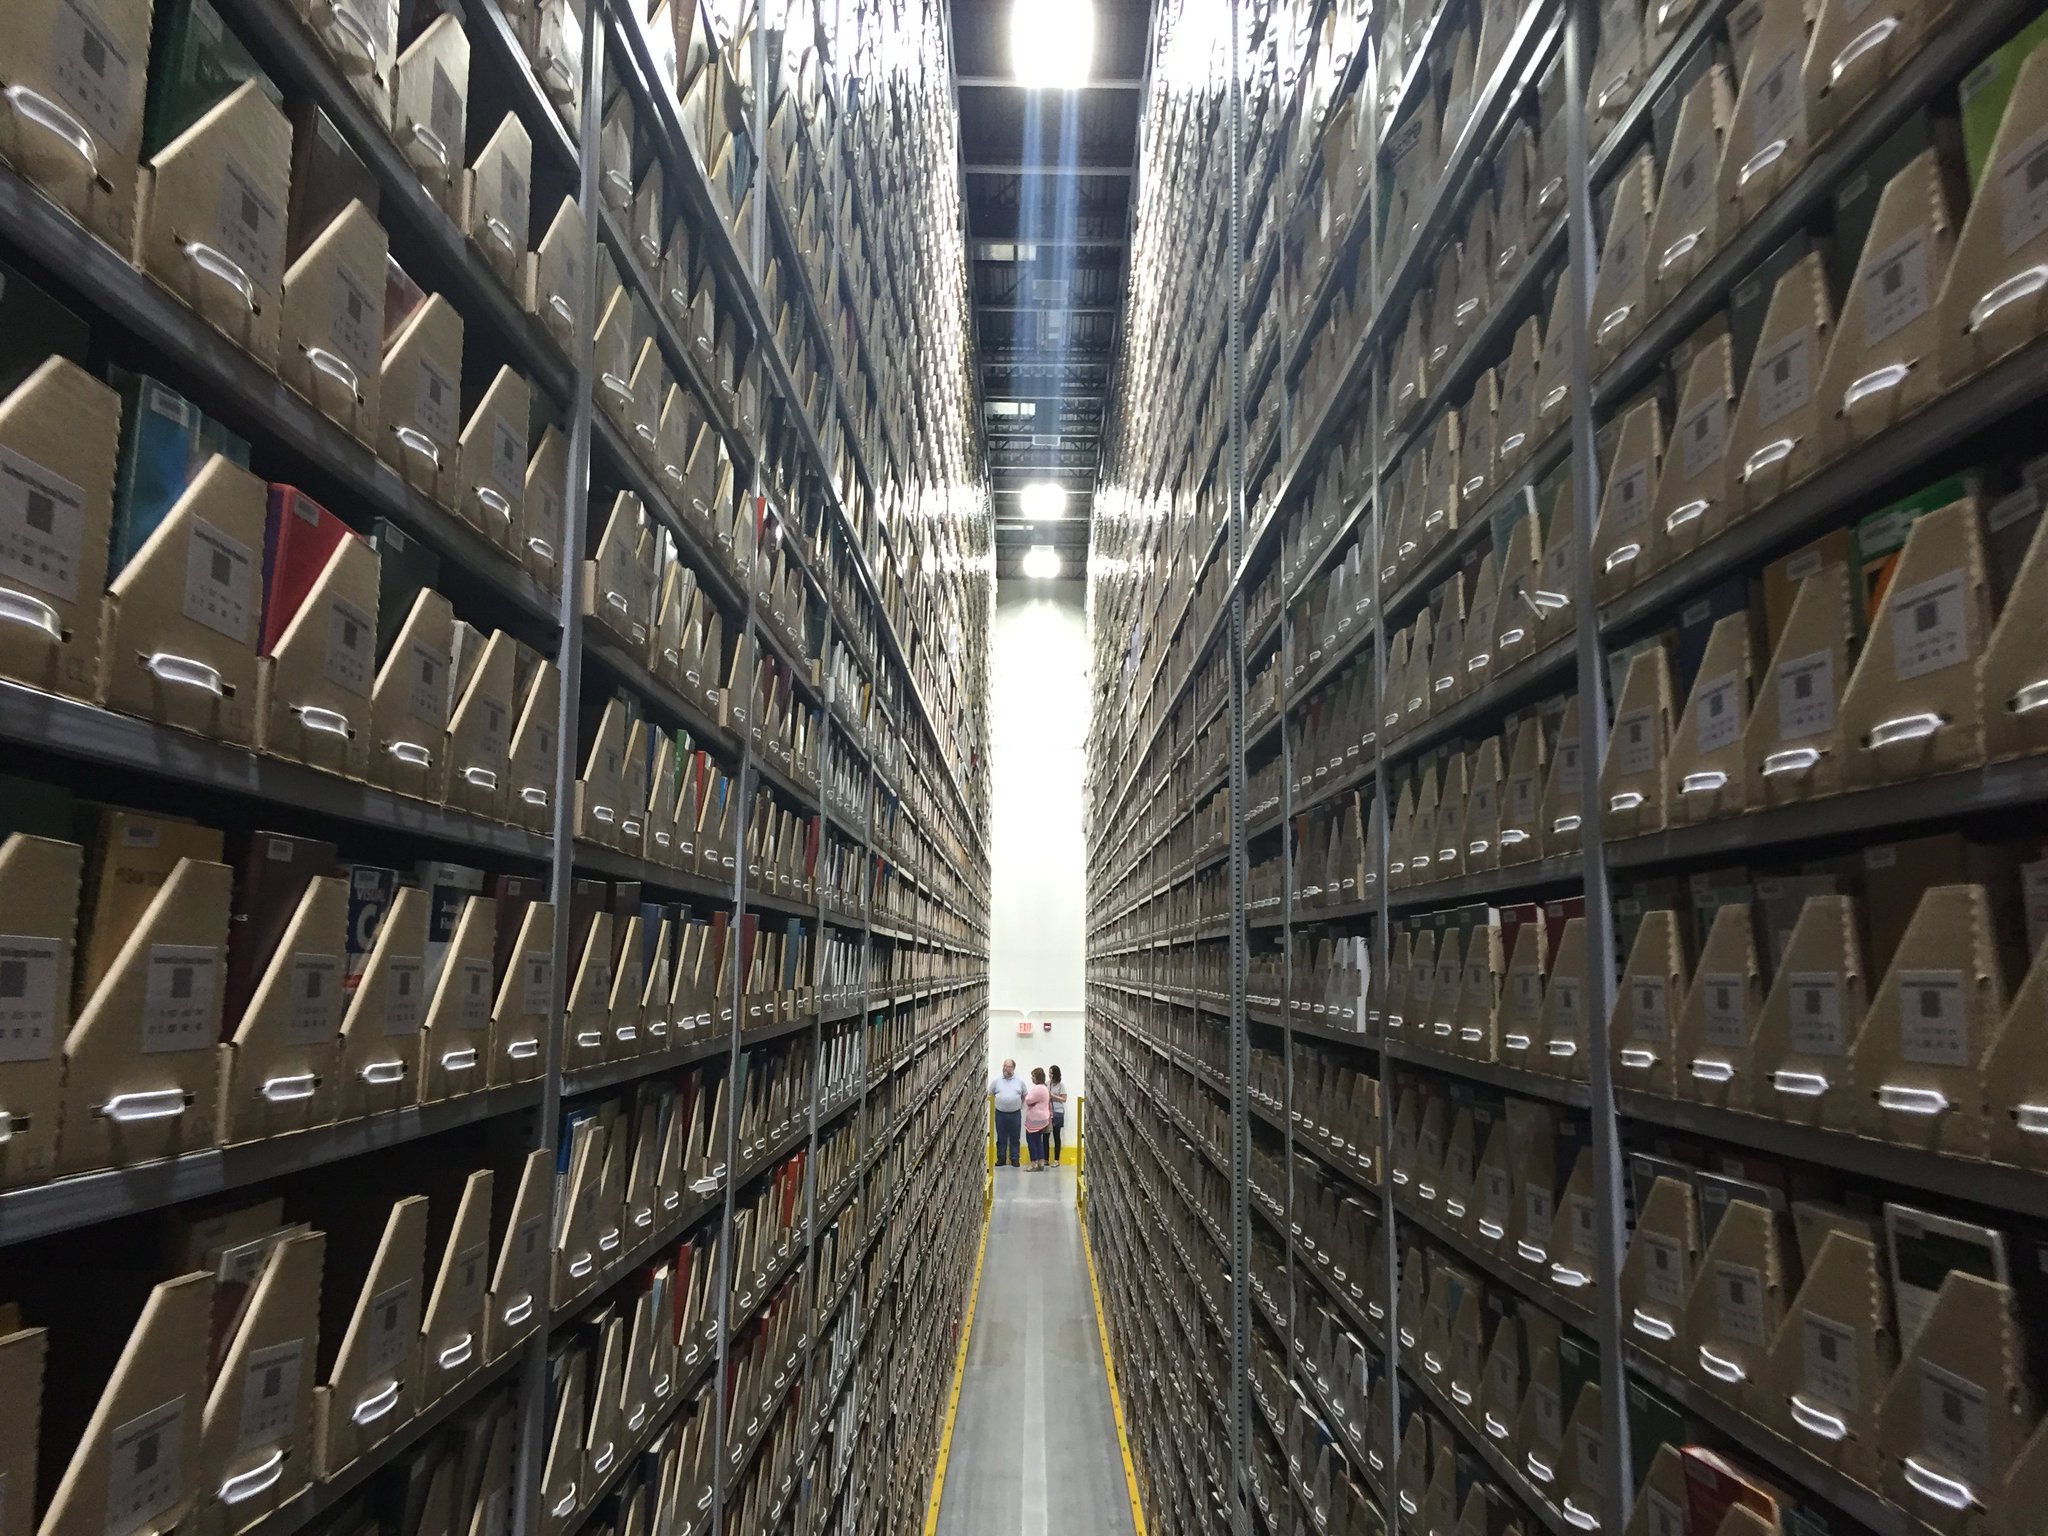 Storage shelves of Southwest Ohio Regional Depository